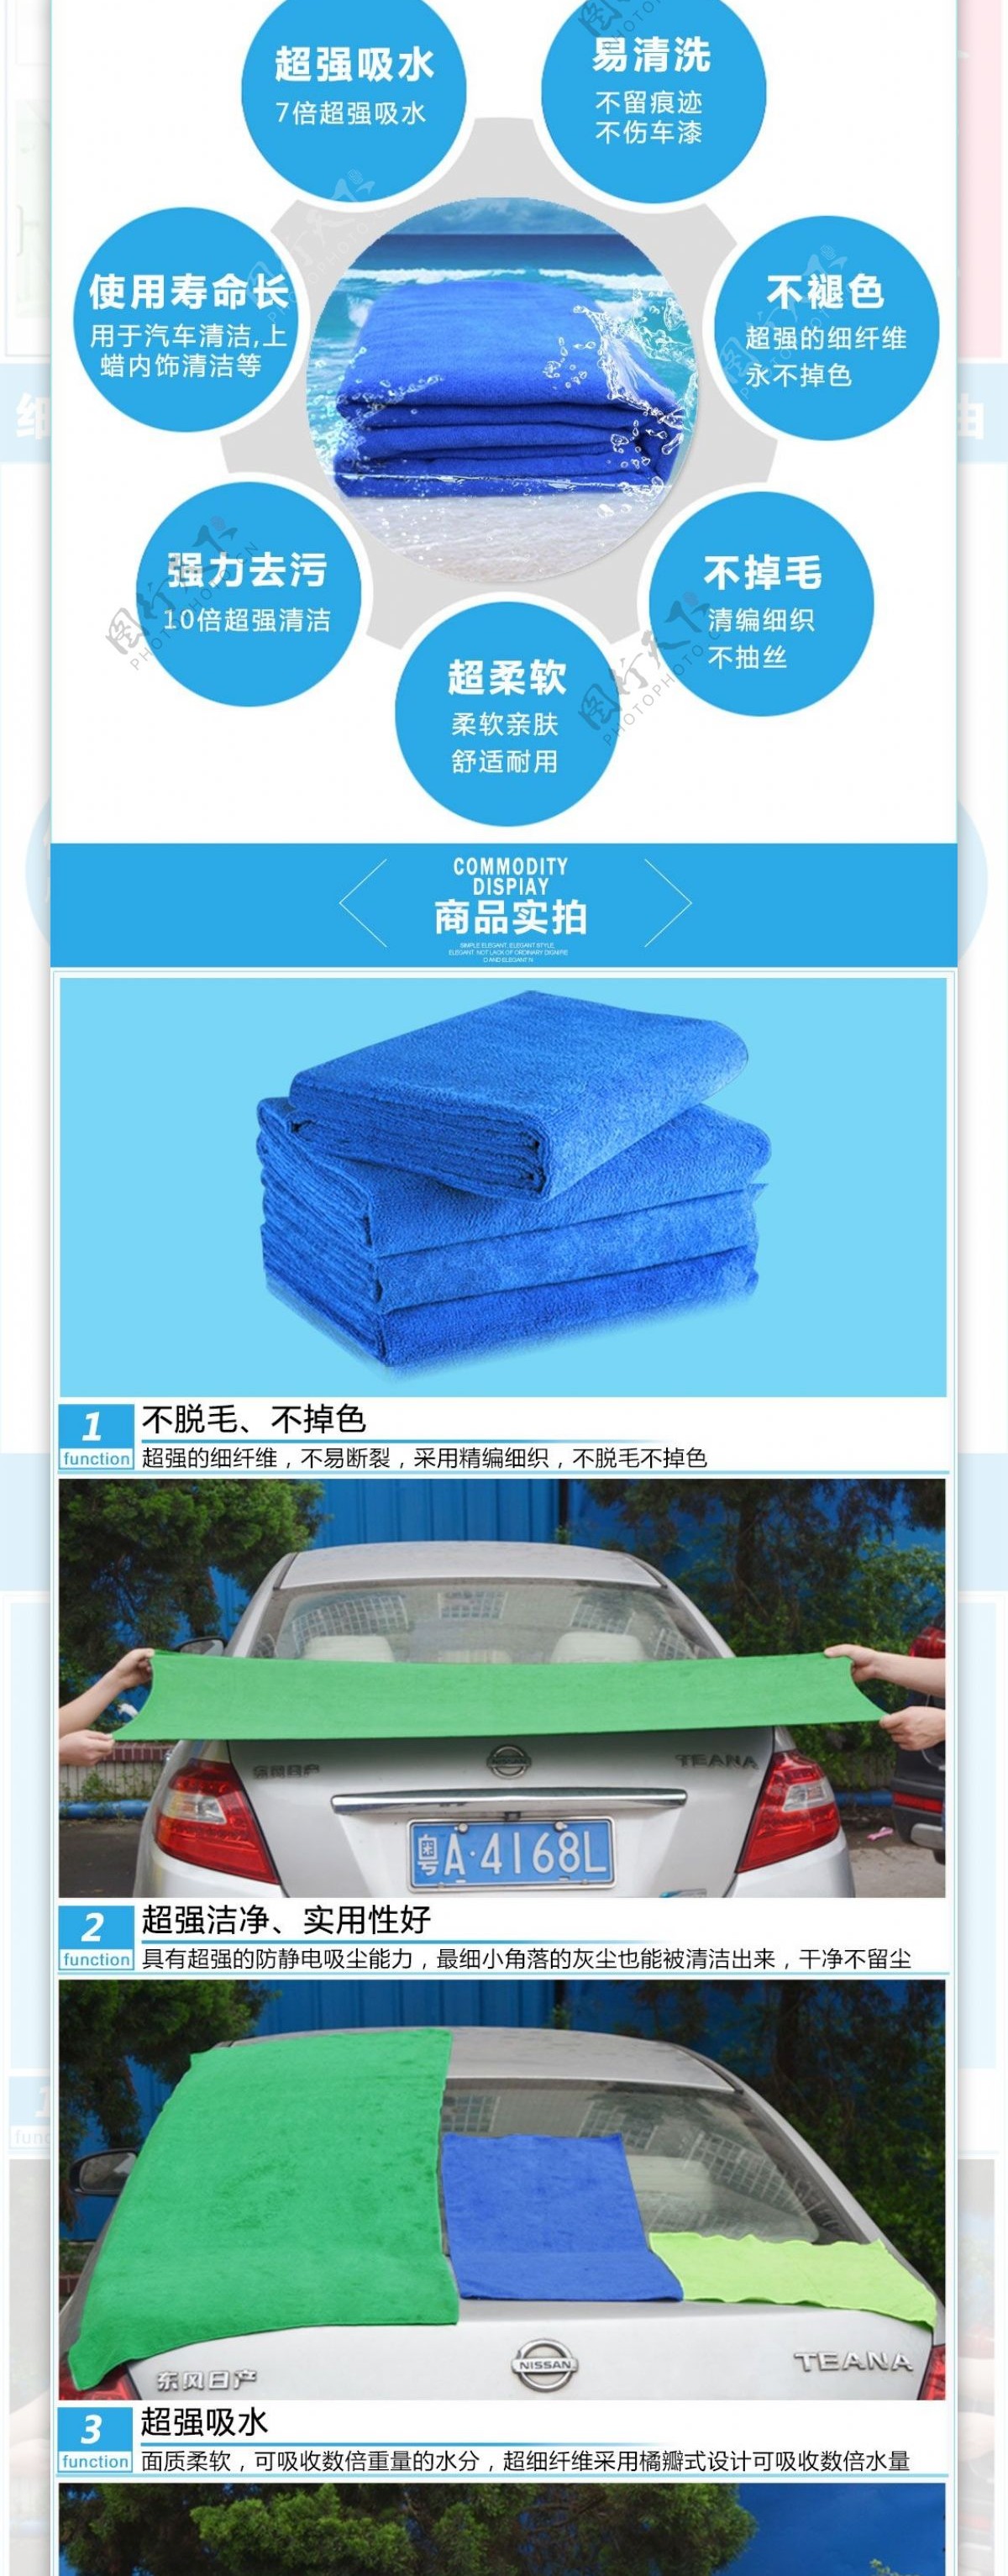 淘宝洗车车用毛巾详情页